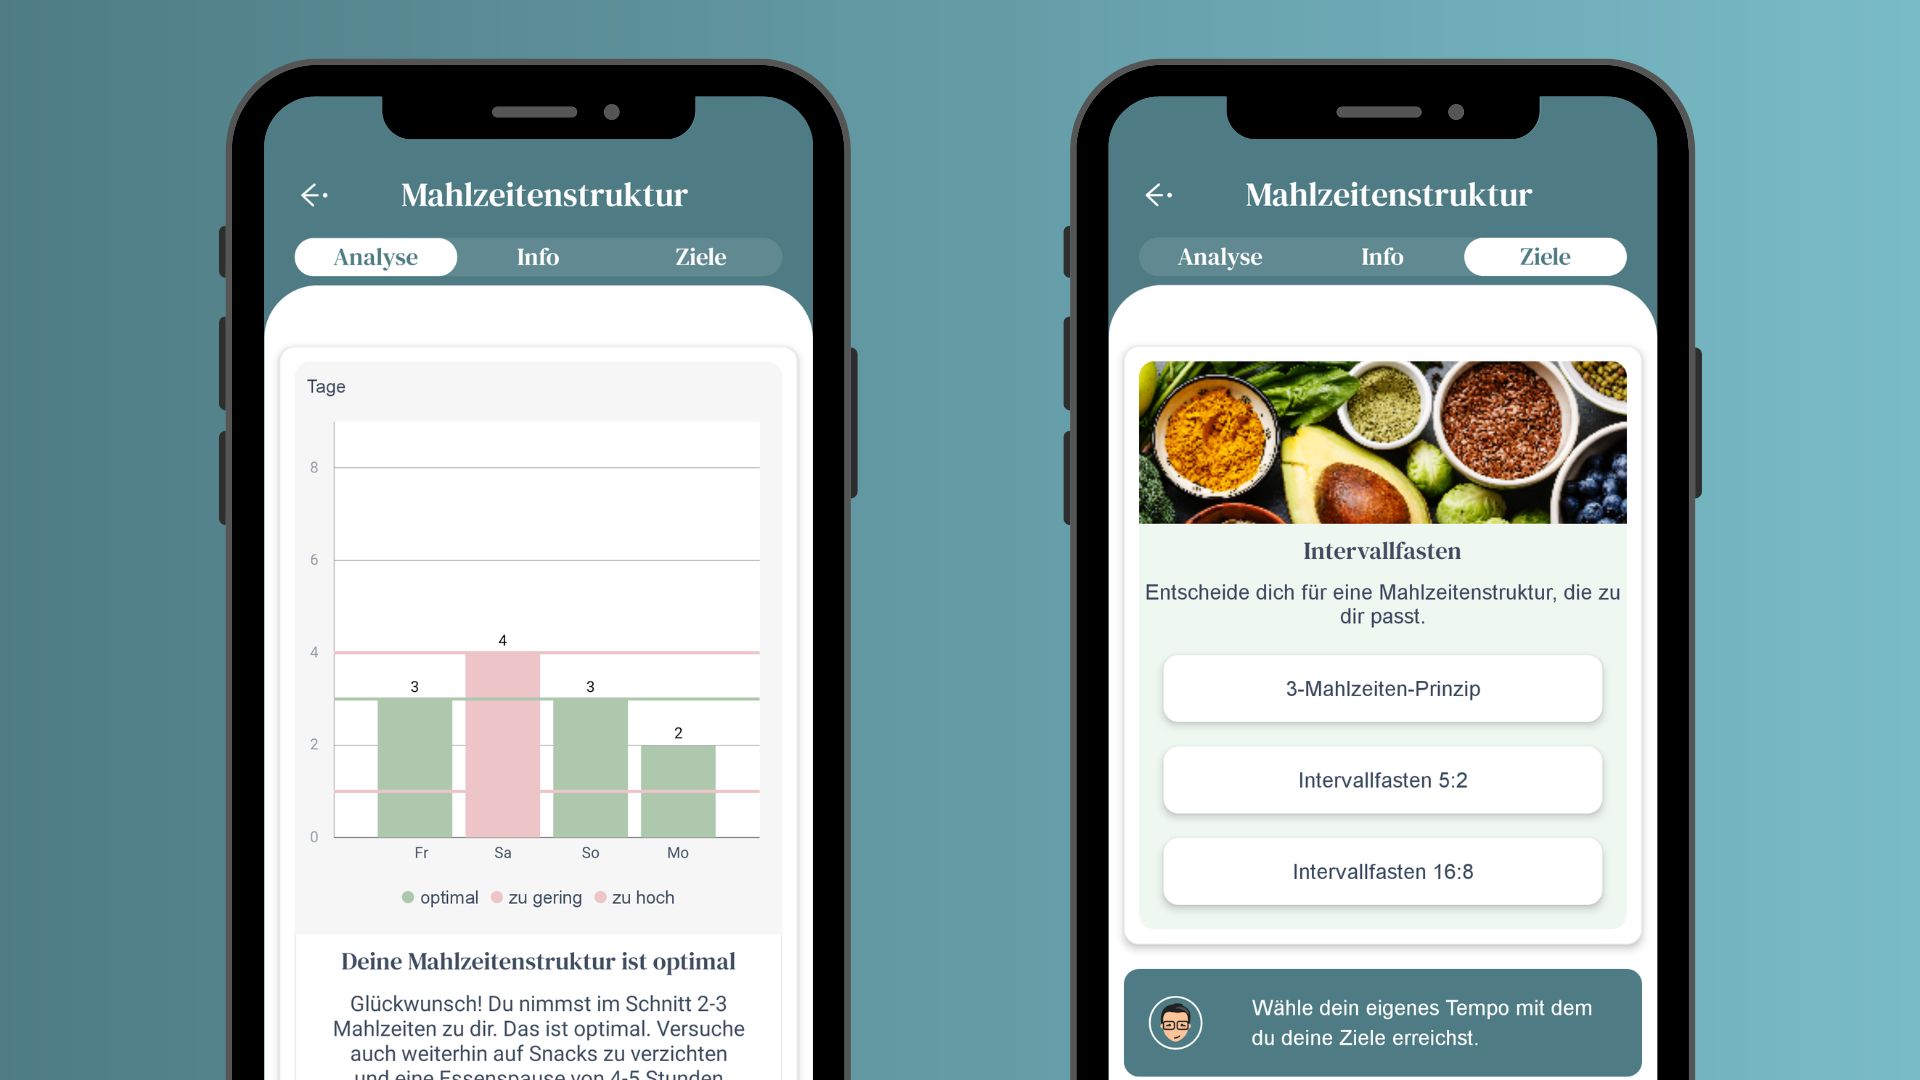 Zwei Screenshots von der Analyse der Mahlzeitenstruktur in der myFoodDoctor-App und der Zielsetzung mit der Wahl zum 3-Mahlzeiten-Prinzip oder dem Intervallfasten